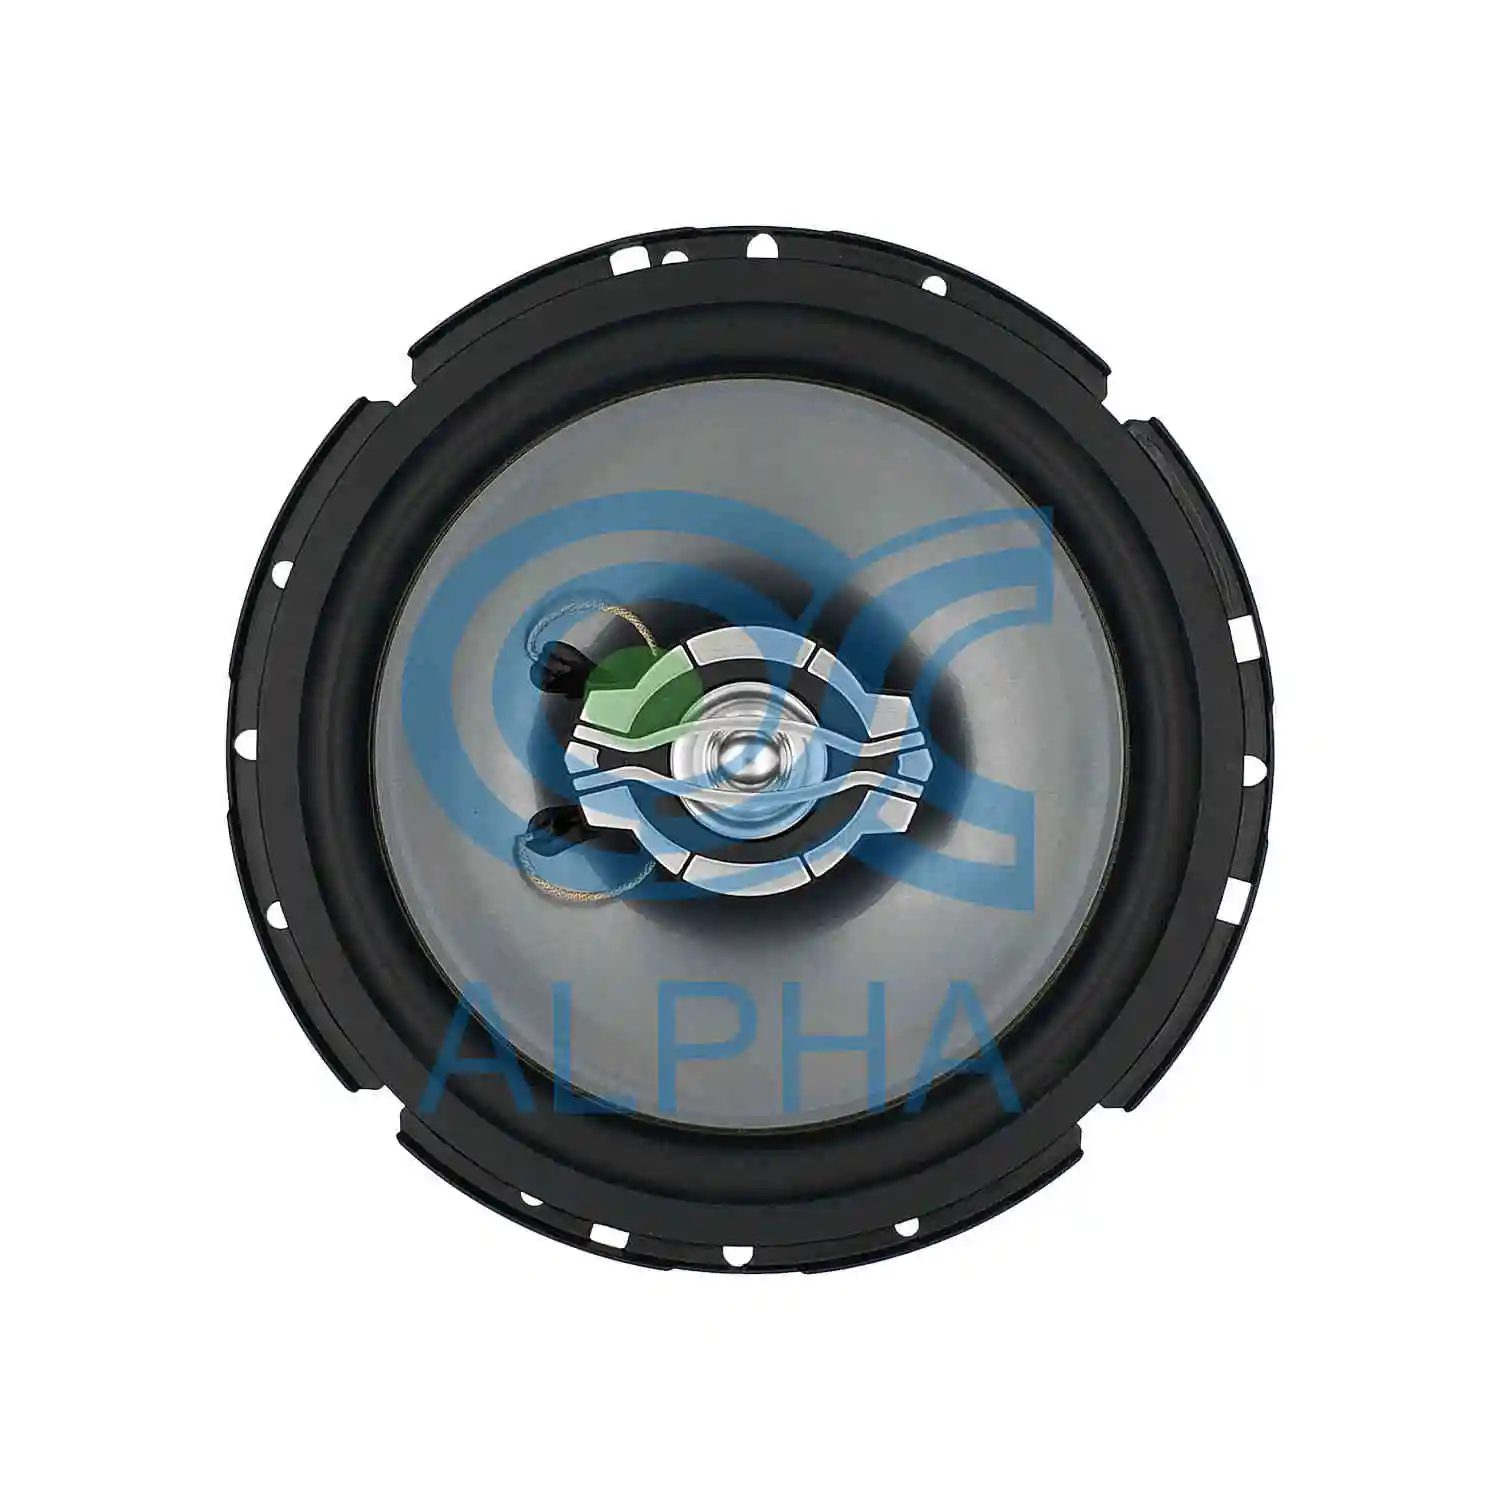 6 인치 동축 차 스피커 2 방법 음악 확성기 차 오디오 증폭기 드라이브 시스템 구성요소 차량 디자인을 위한 강화된 저음 스피커